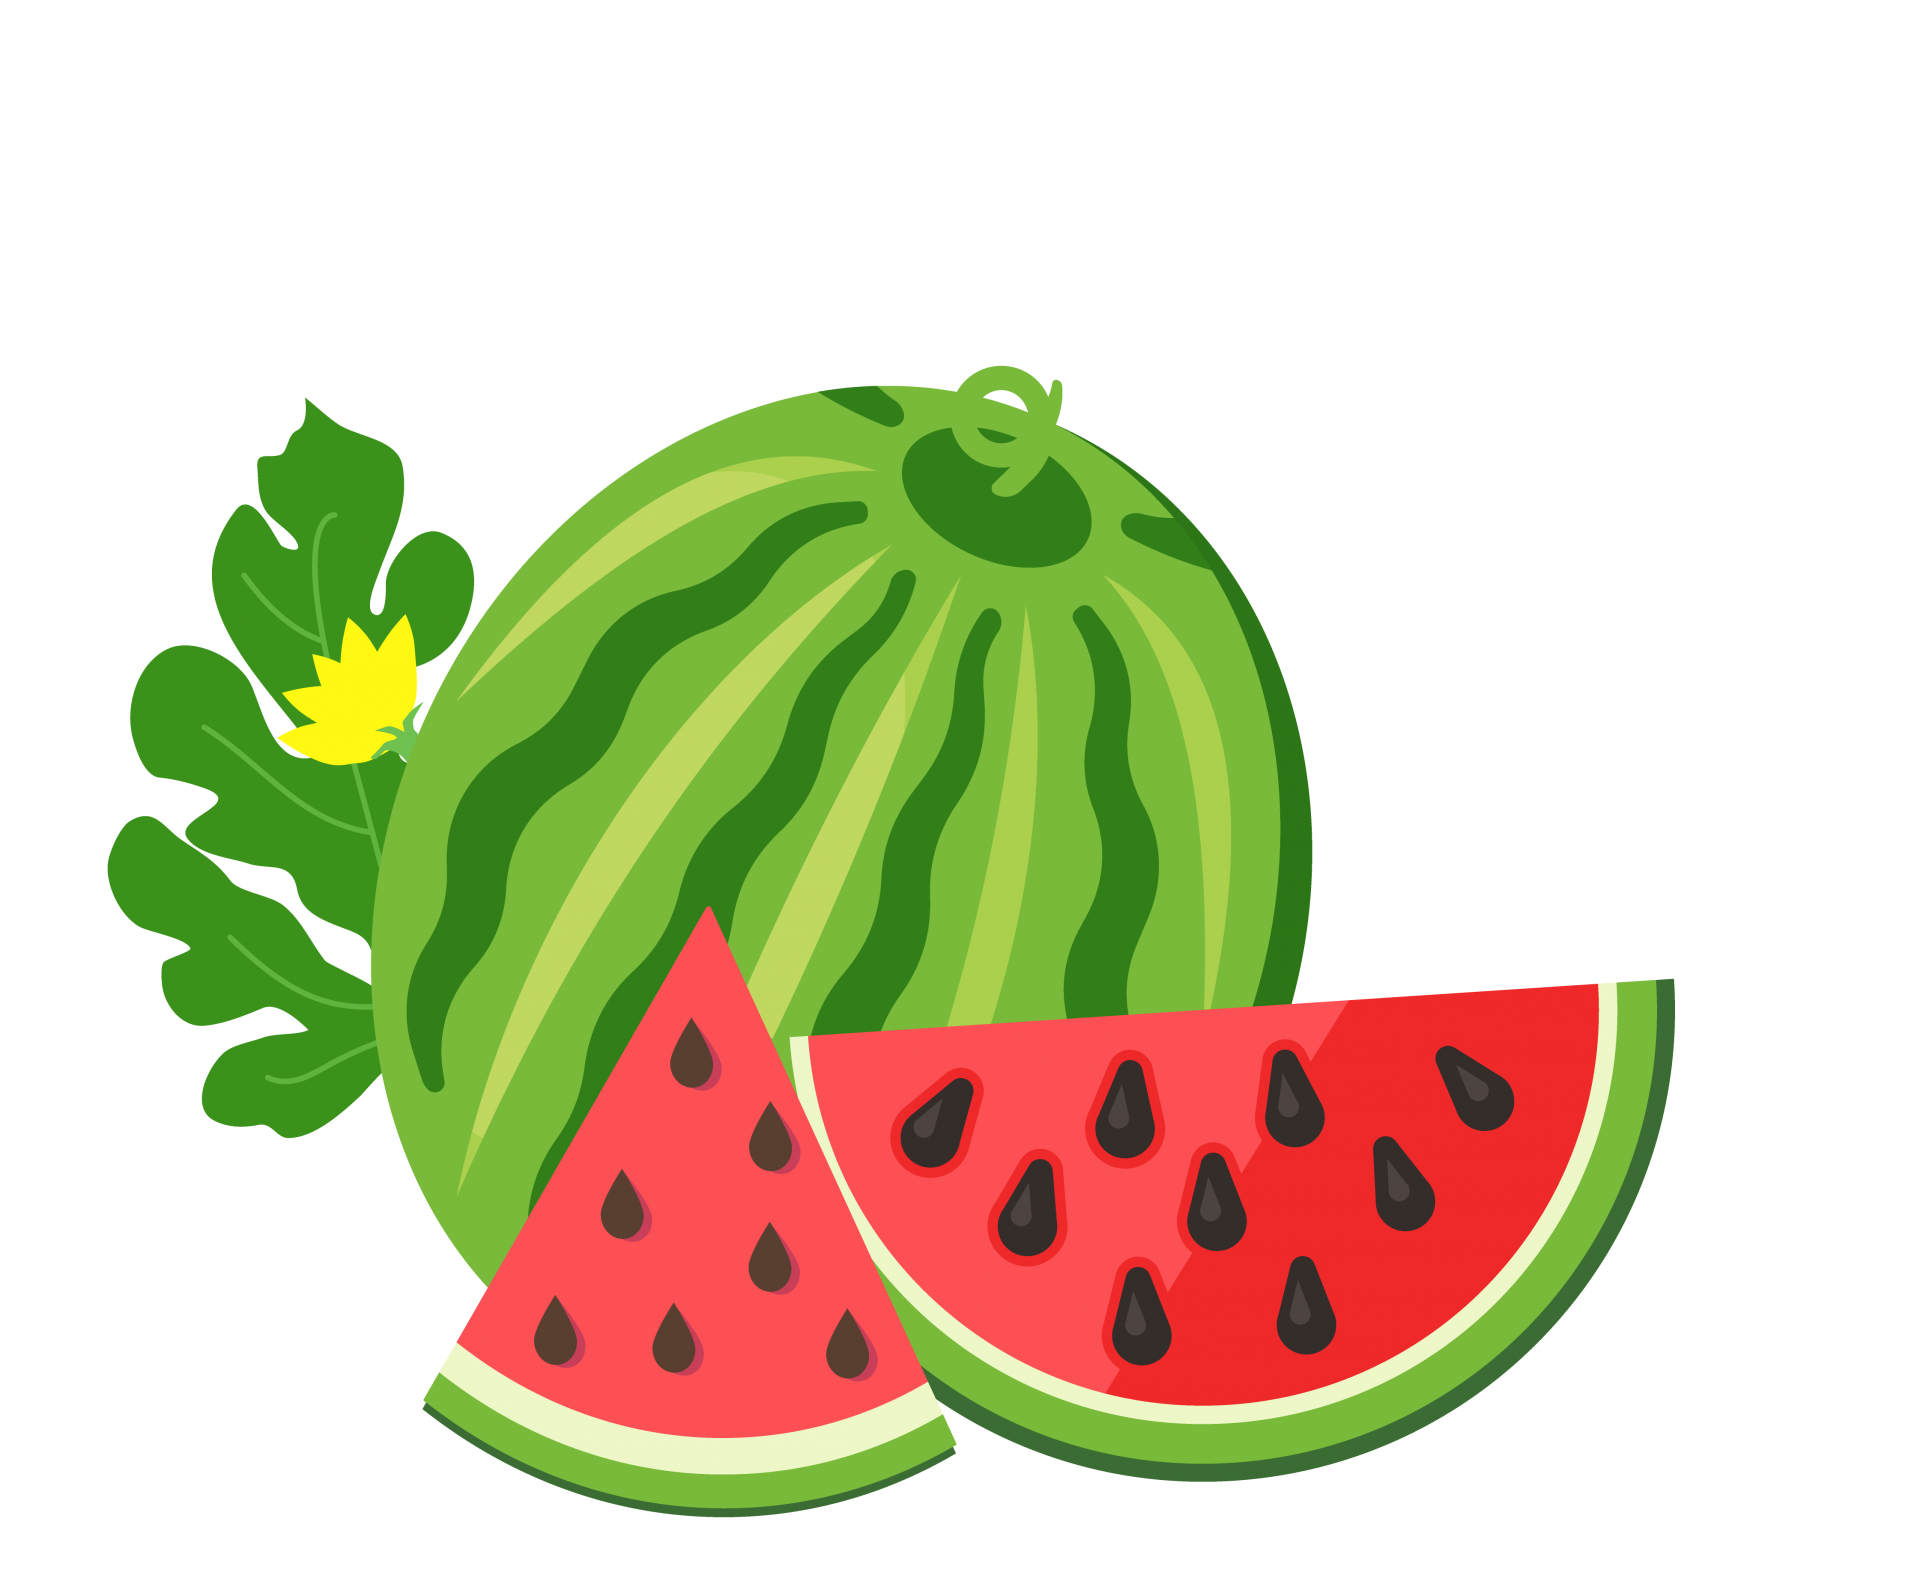 Watermelon Fruit Illustration Art